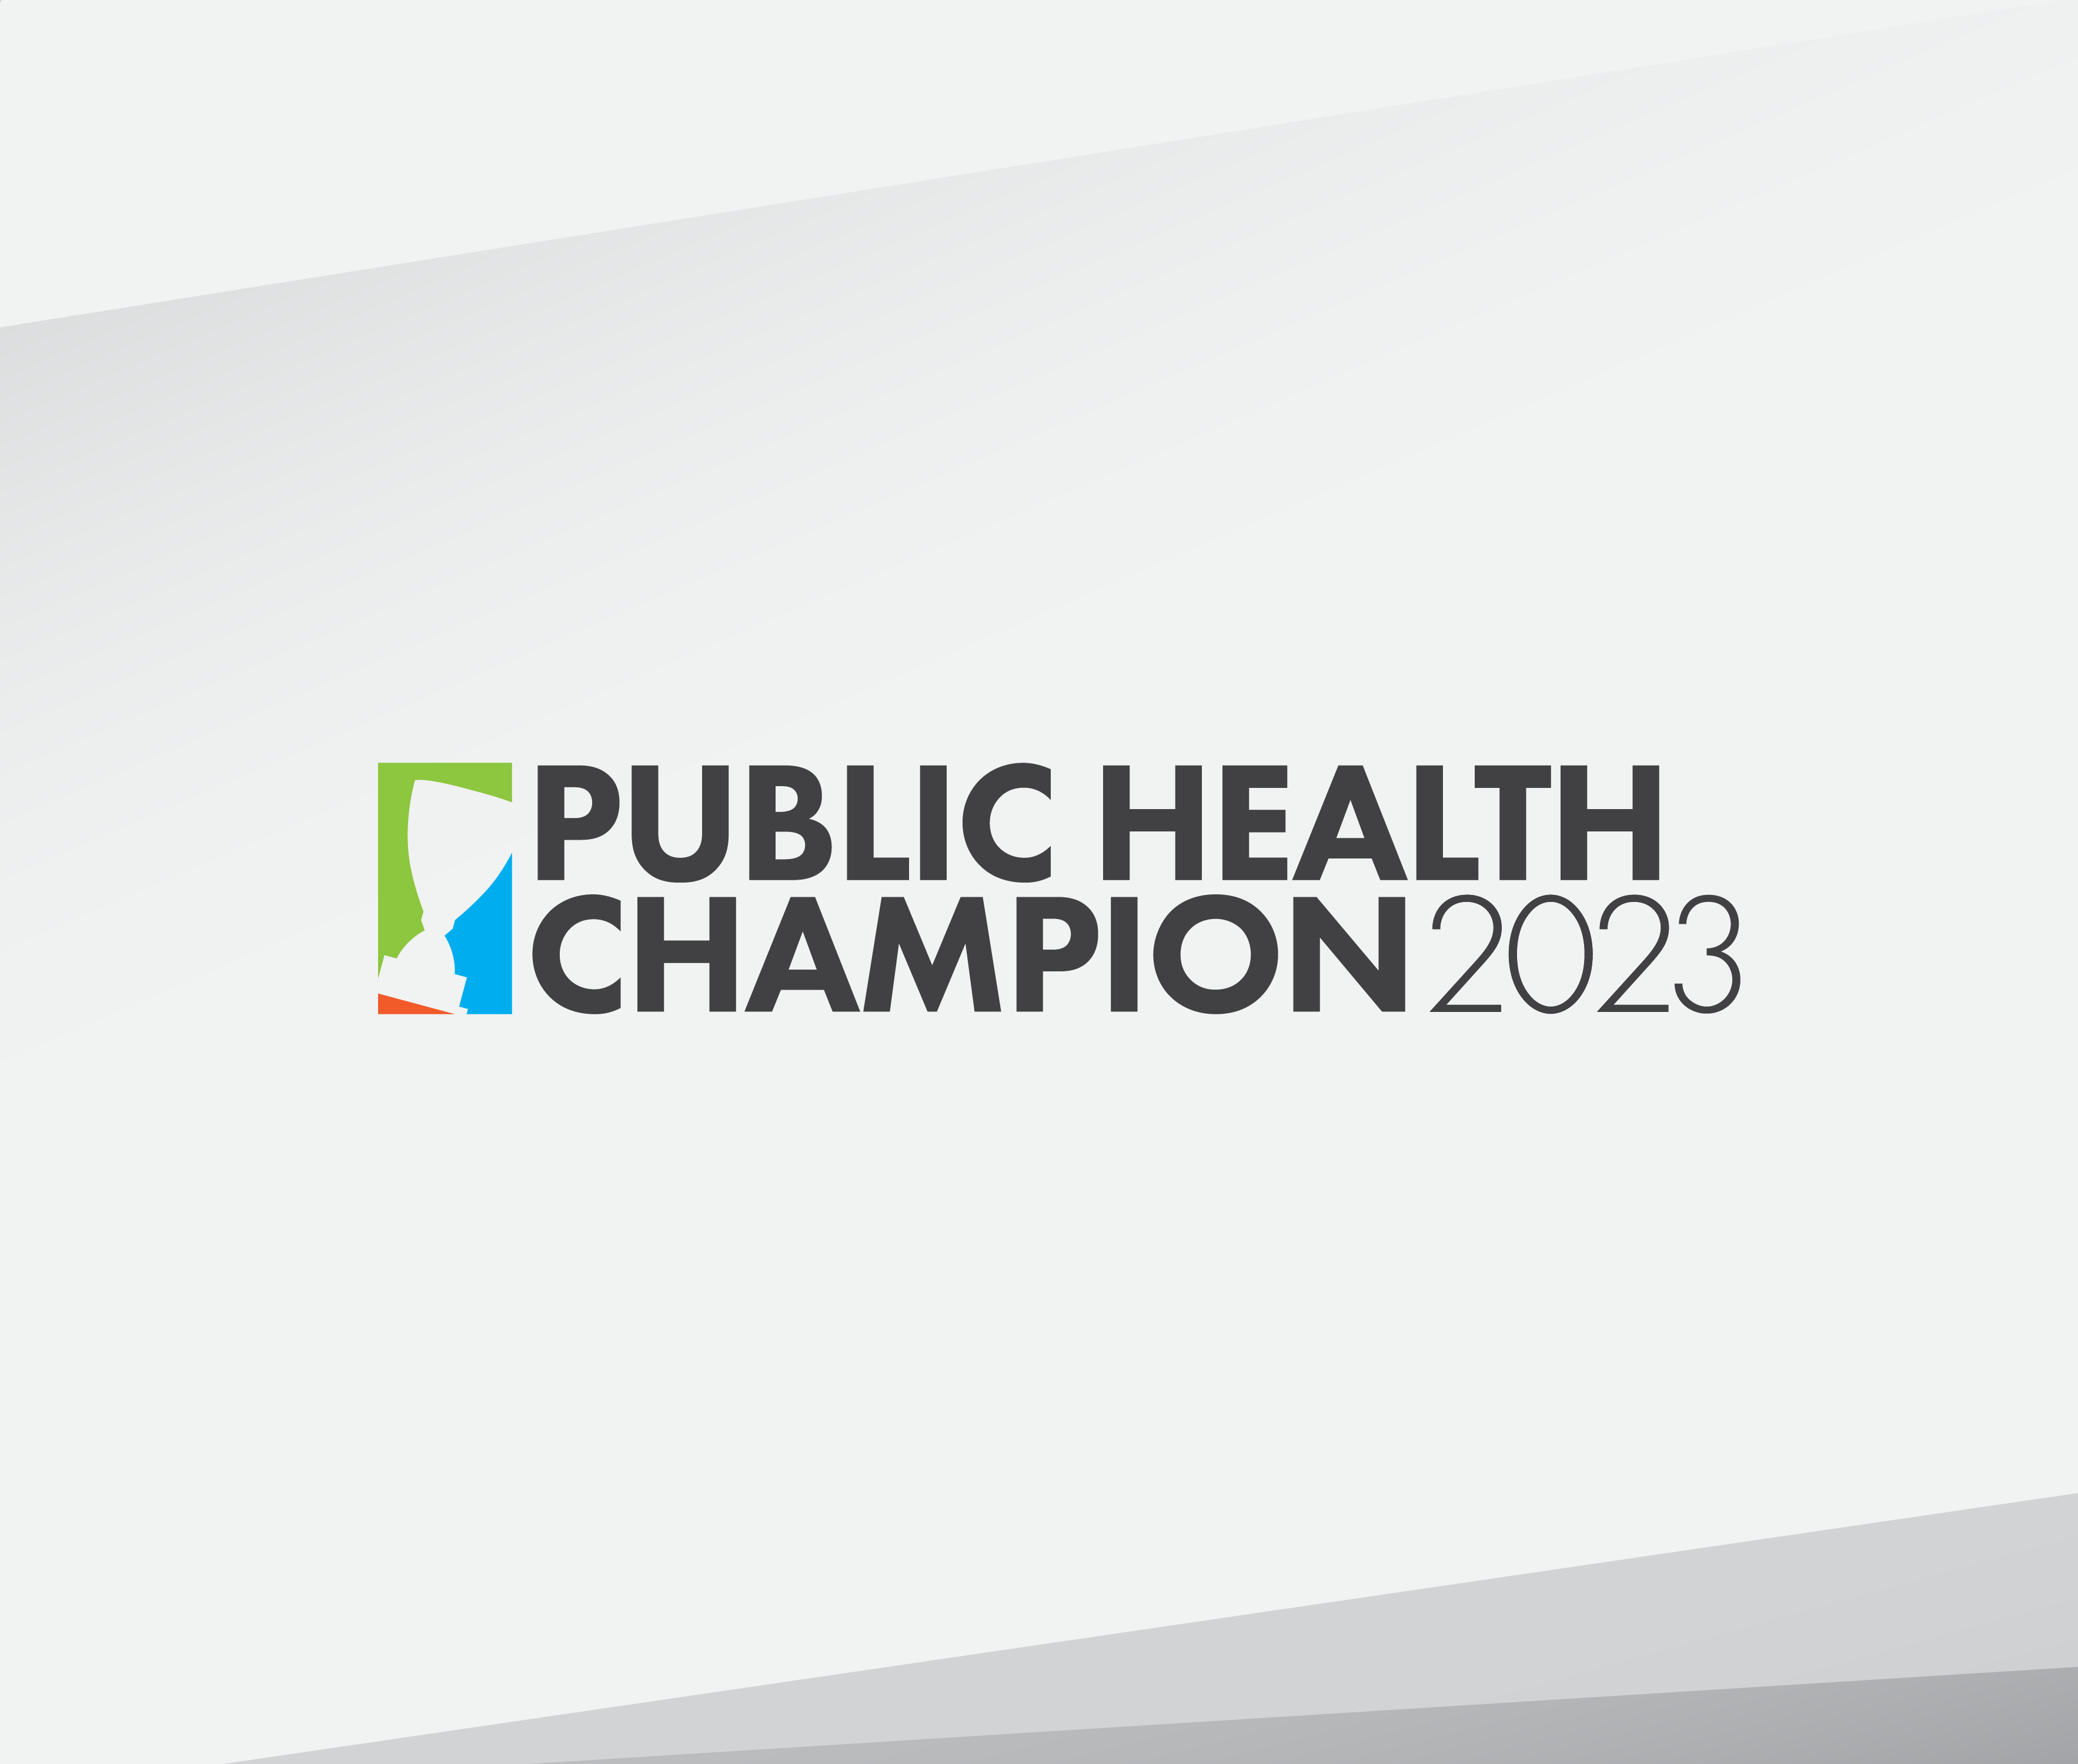 Public Health Champion(s) 2023